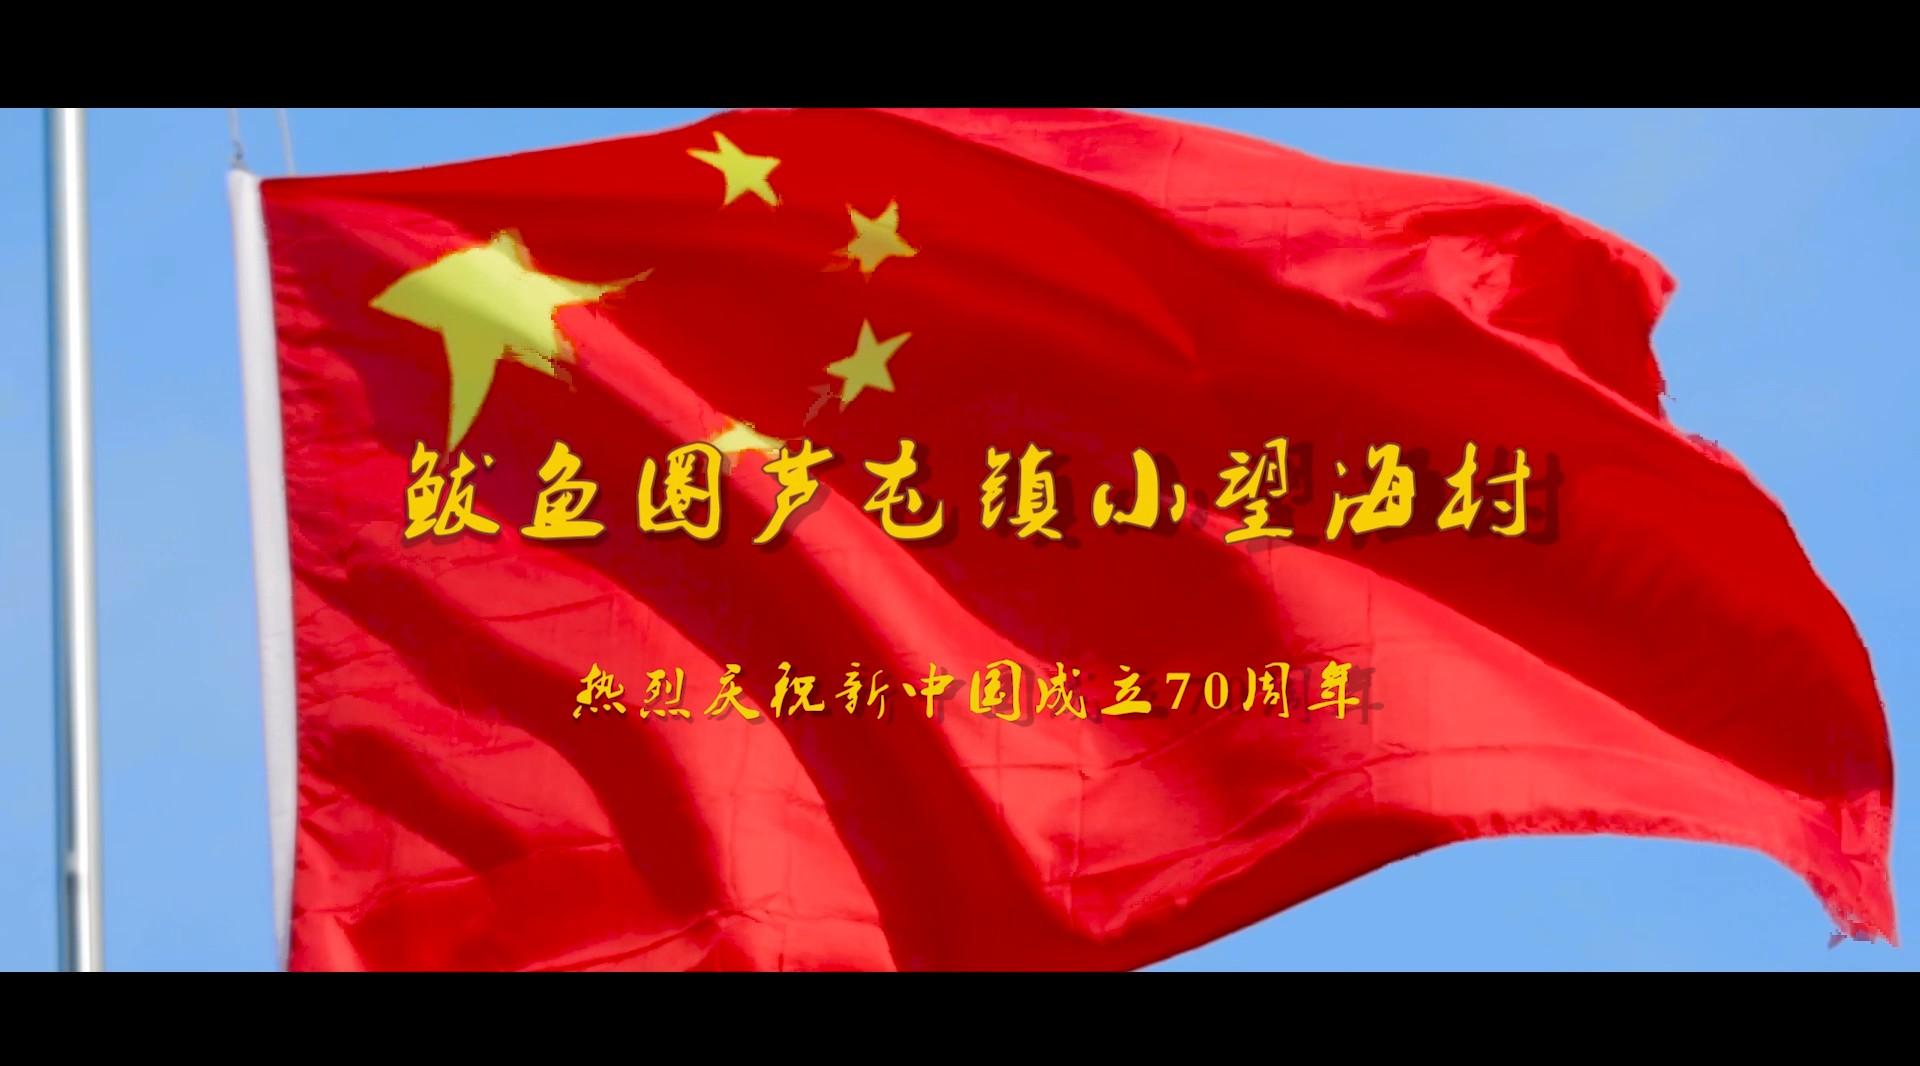 鲅鱼圈芦屯镇小望海村 热烈庆祝新中国成立70周年